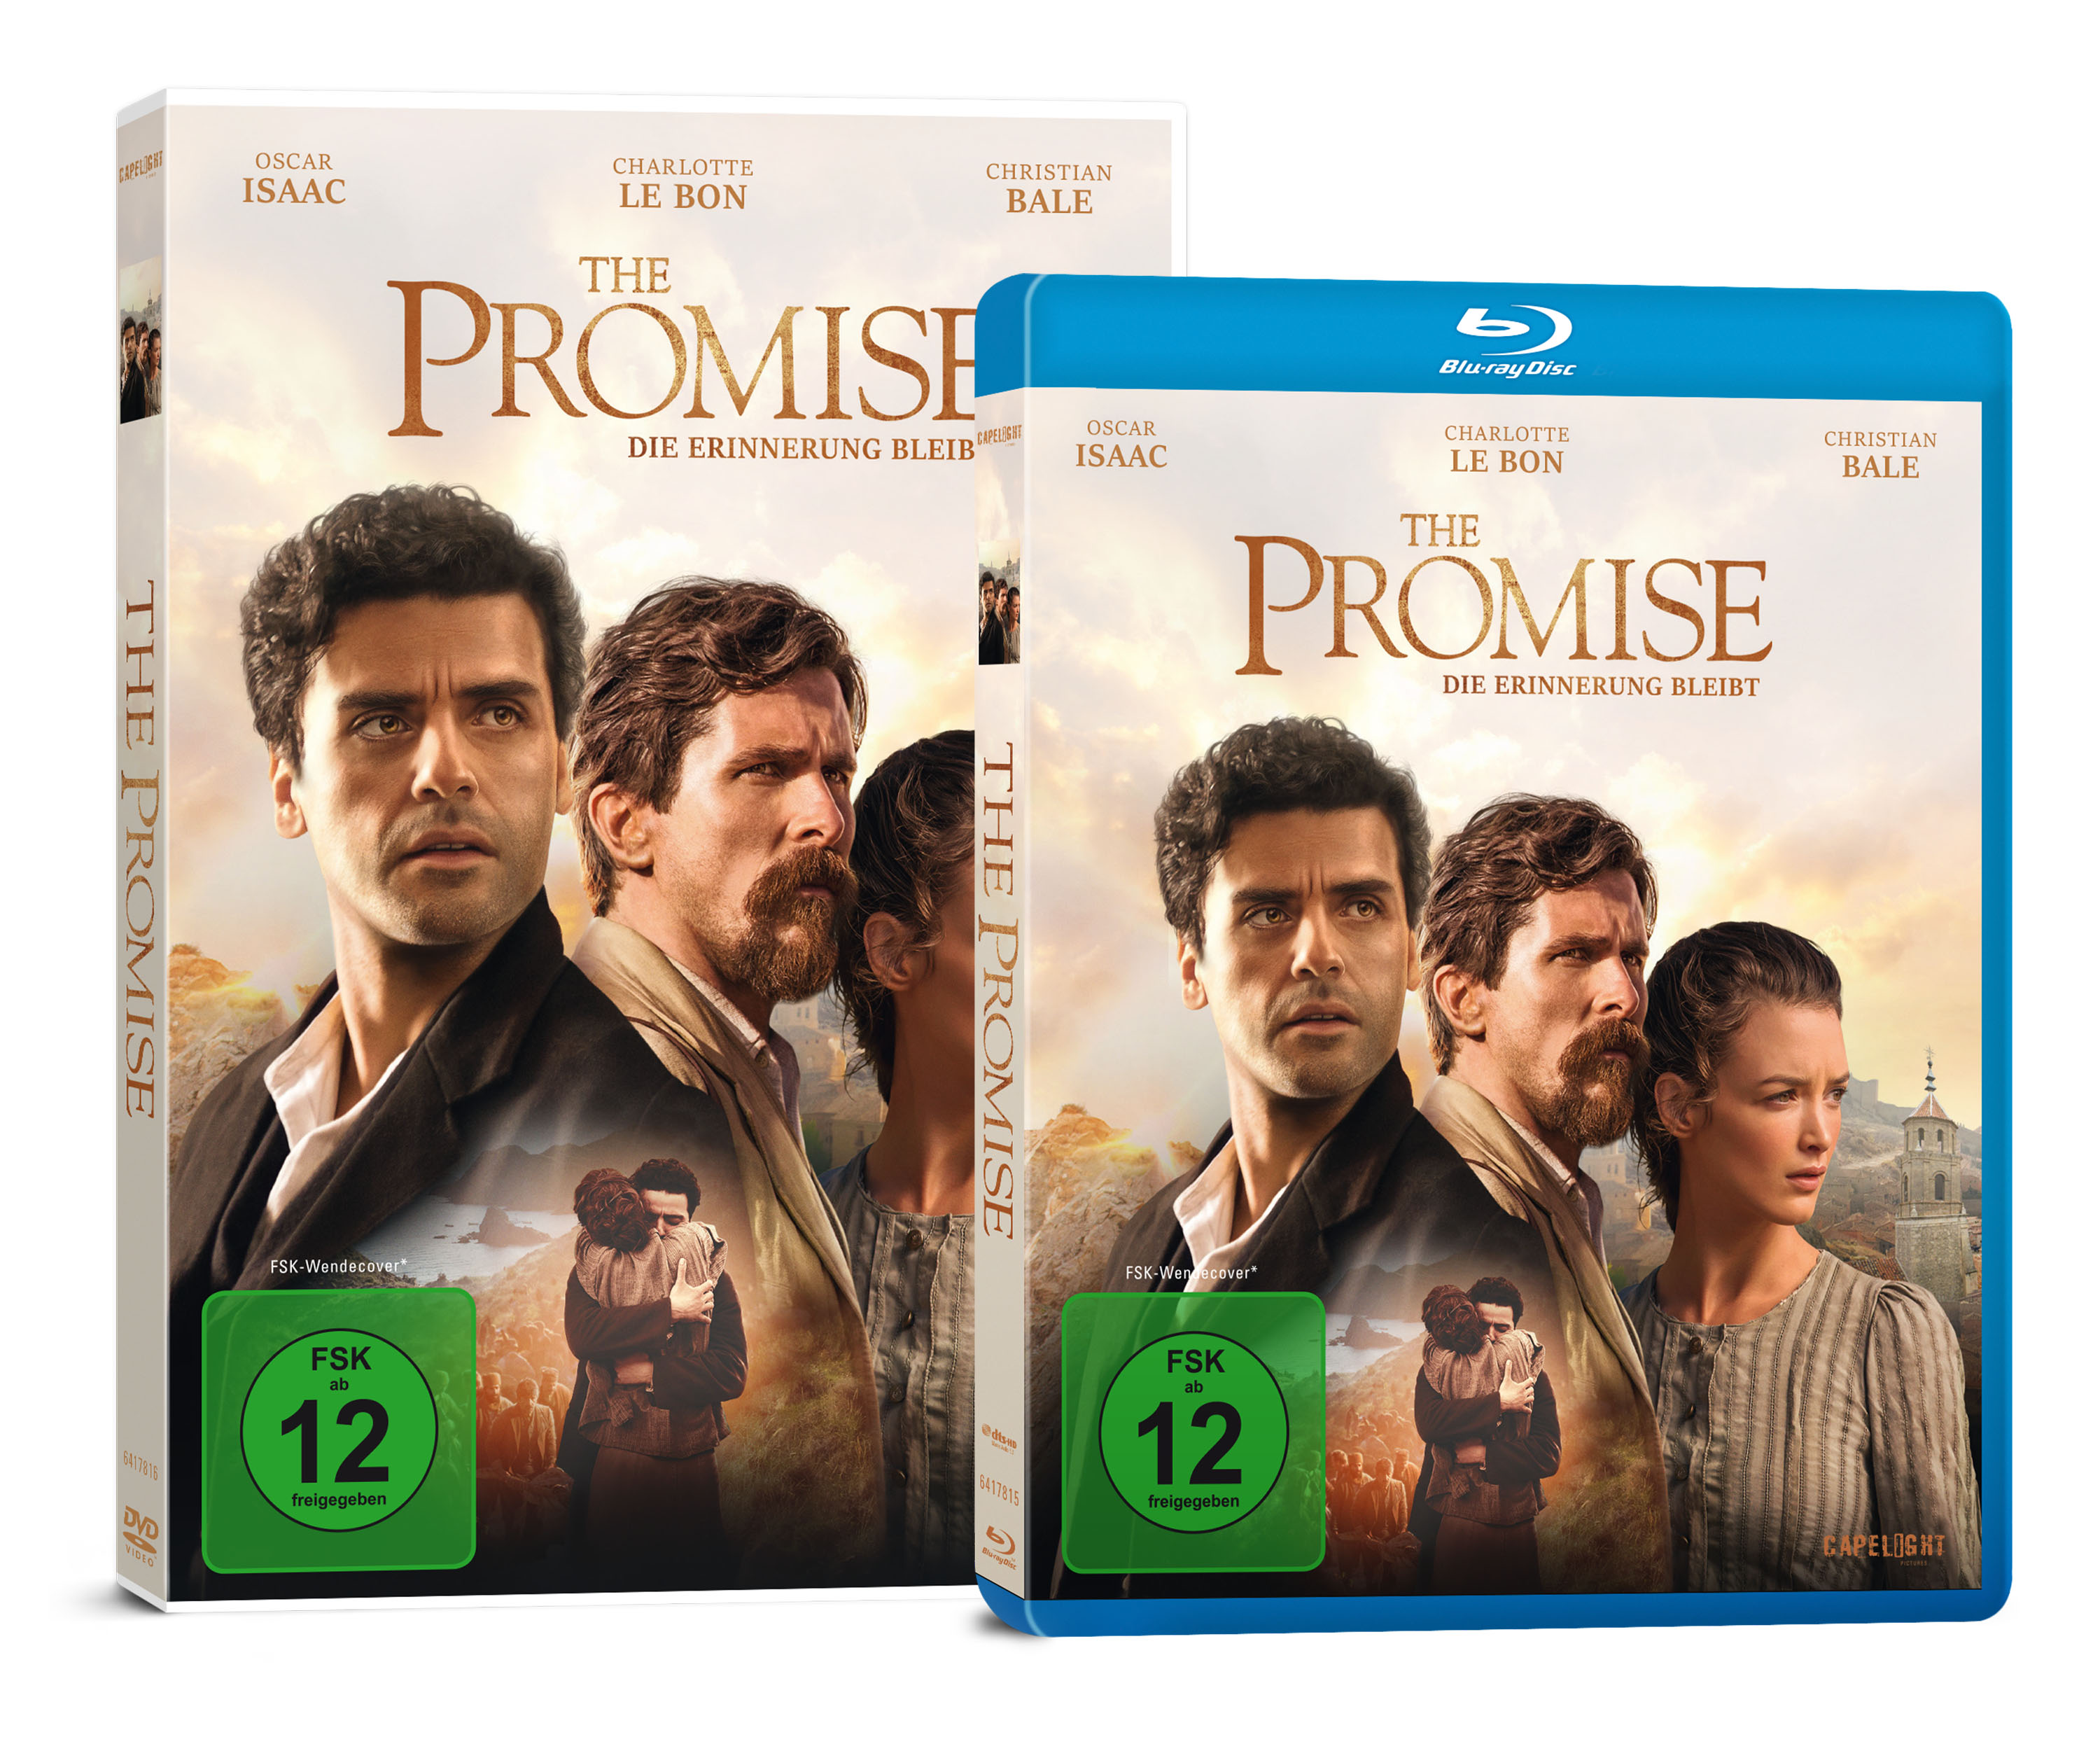 THE PROMISE – DIE ERINNERUNG BLEIBT ab heute auf Blu-ray, DVD und digital erhältlich